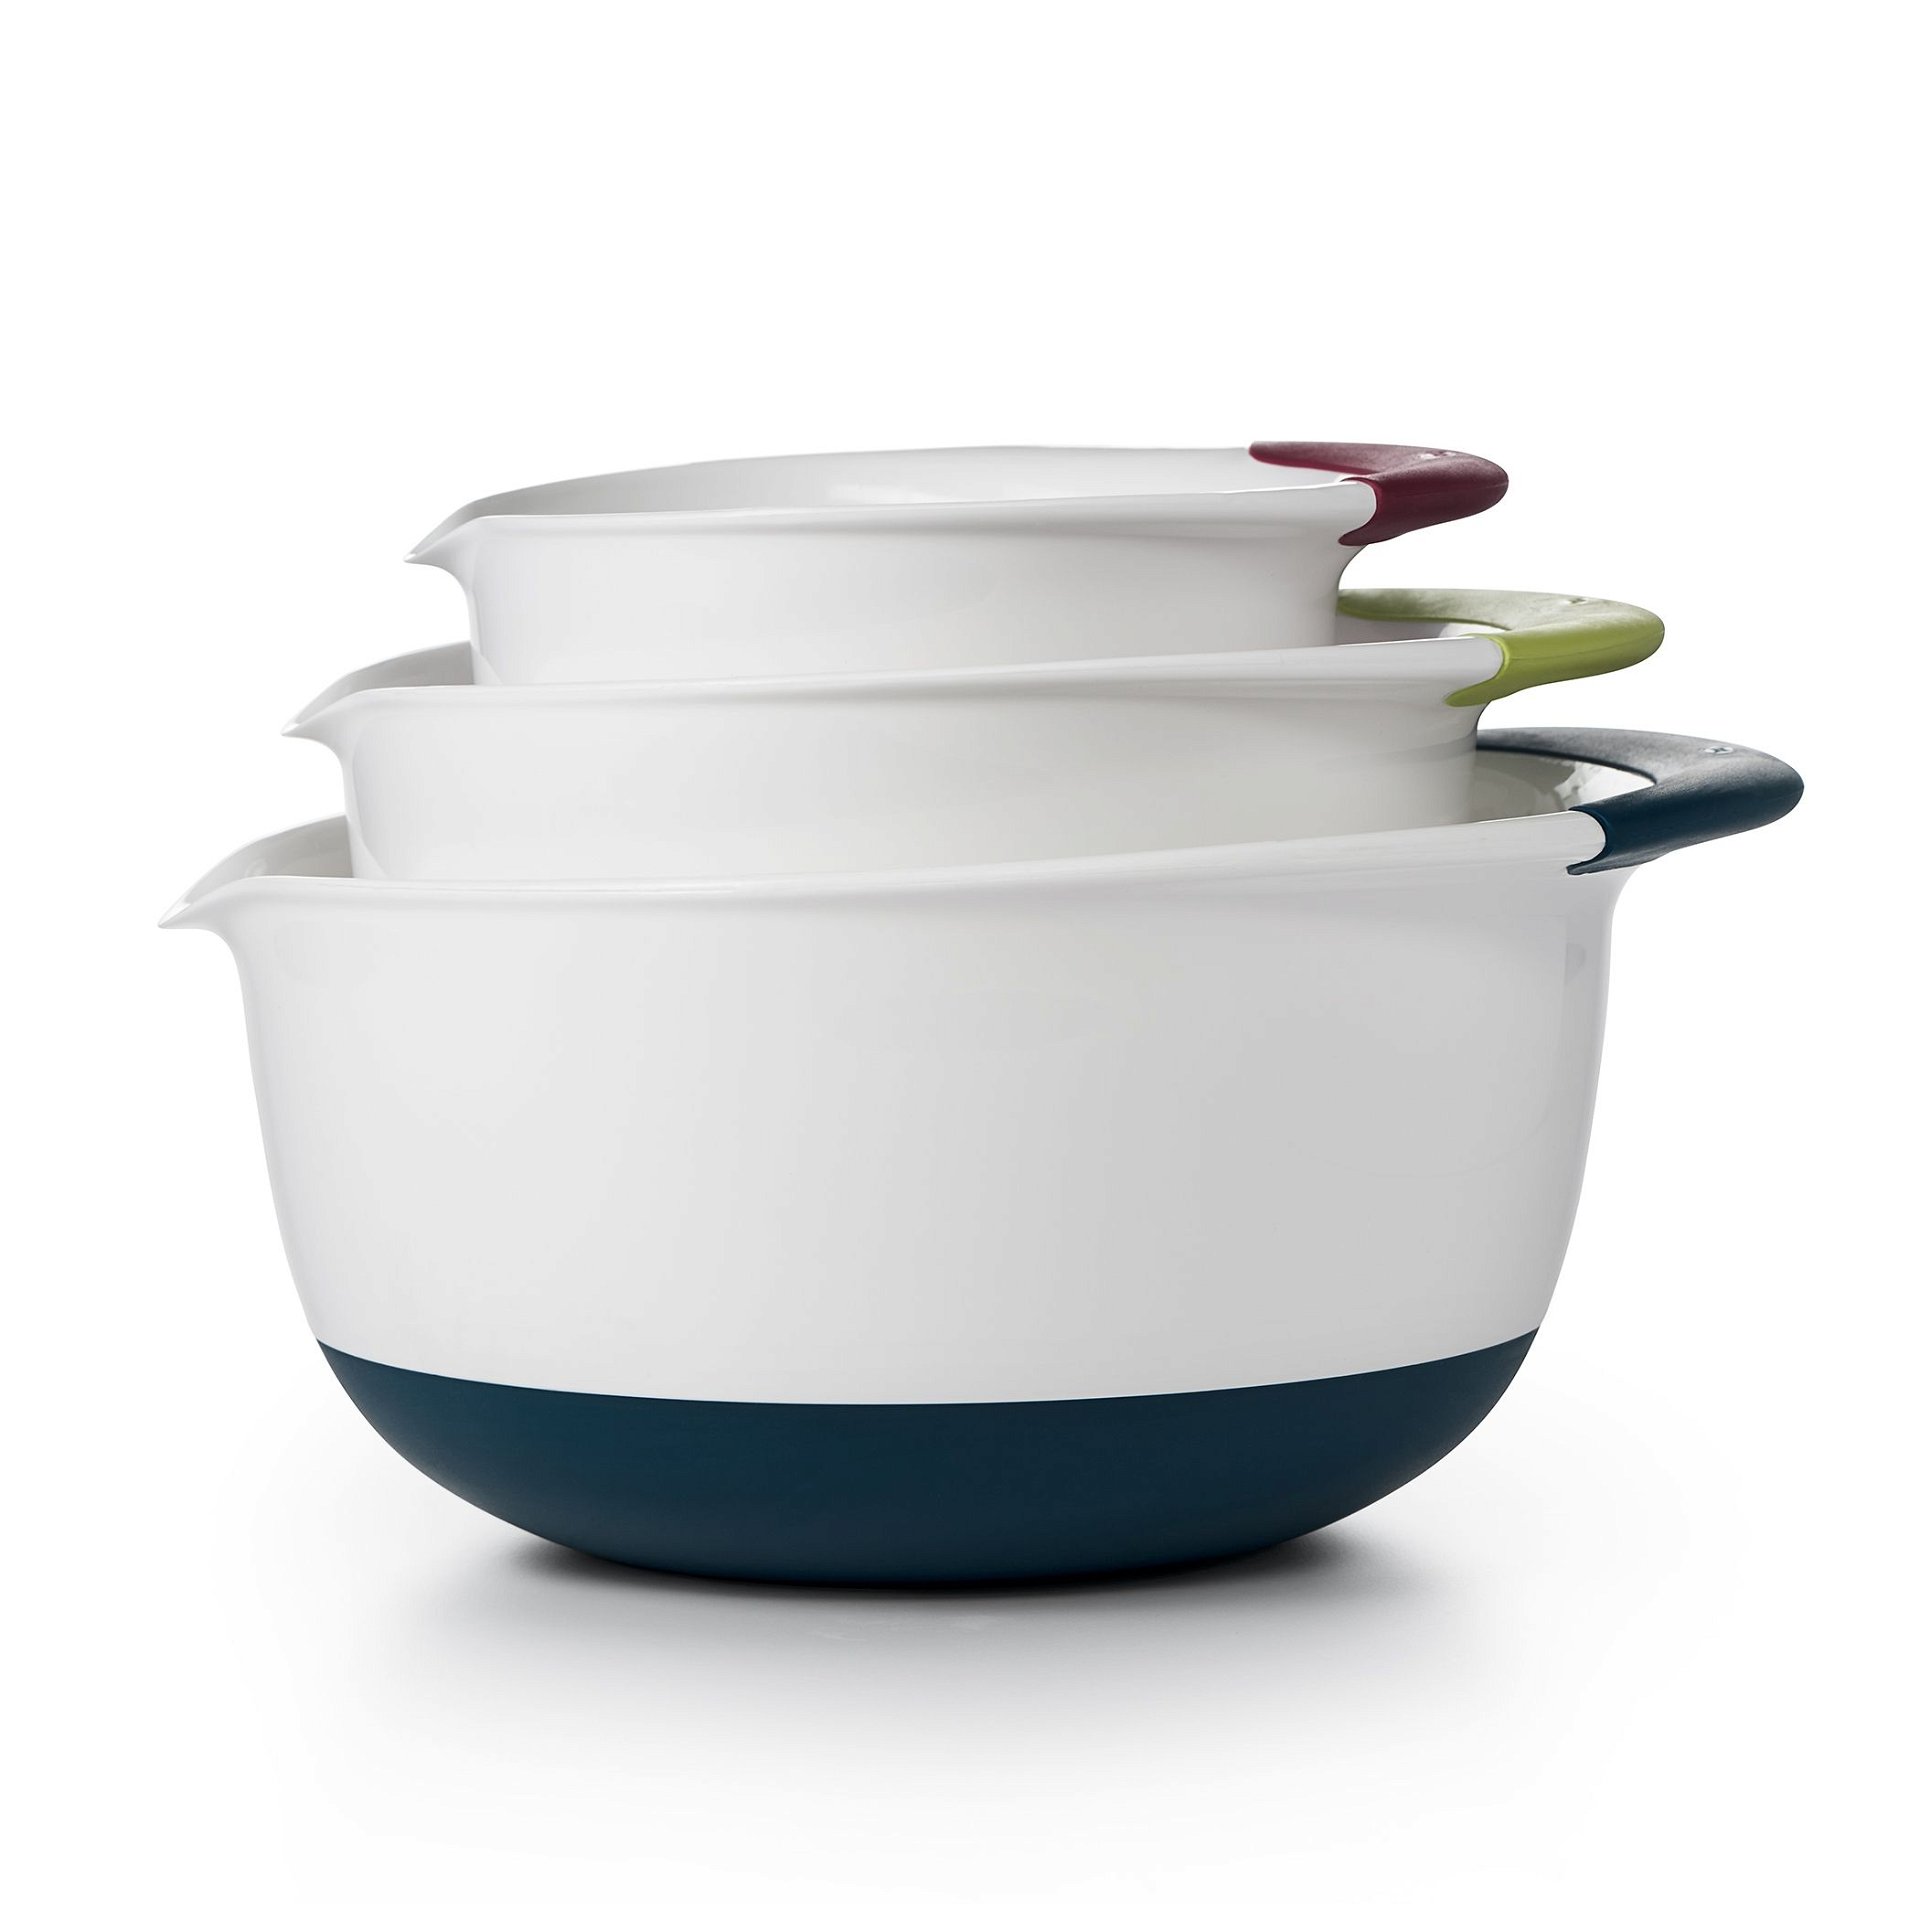 KitchenAid Universal Easy Pour Non-Slip Mixing Bowl - Red, Grey & White - 3 Pieces